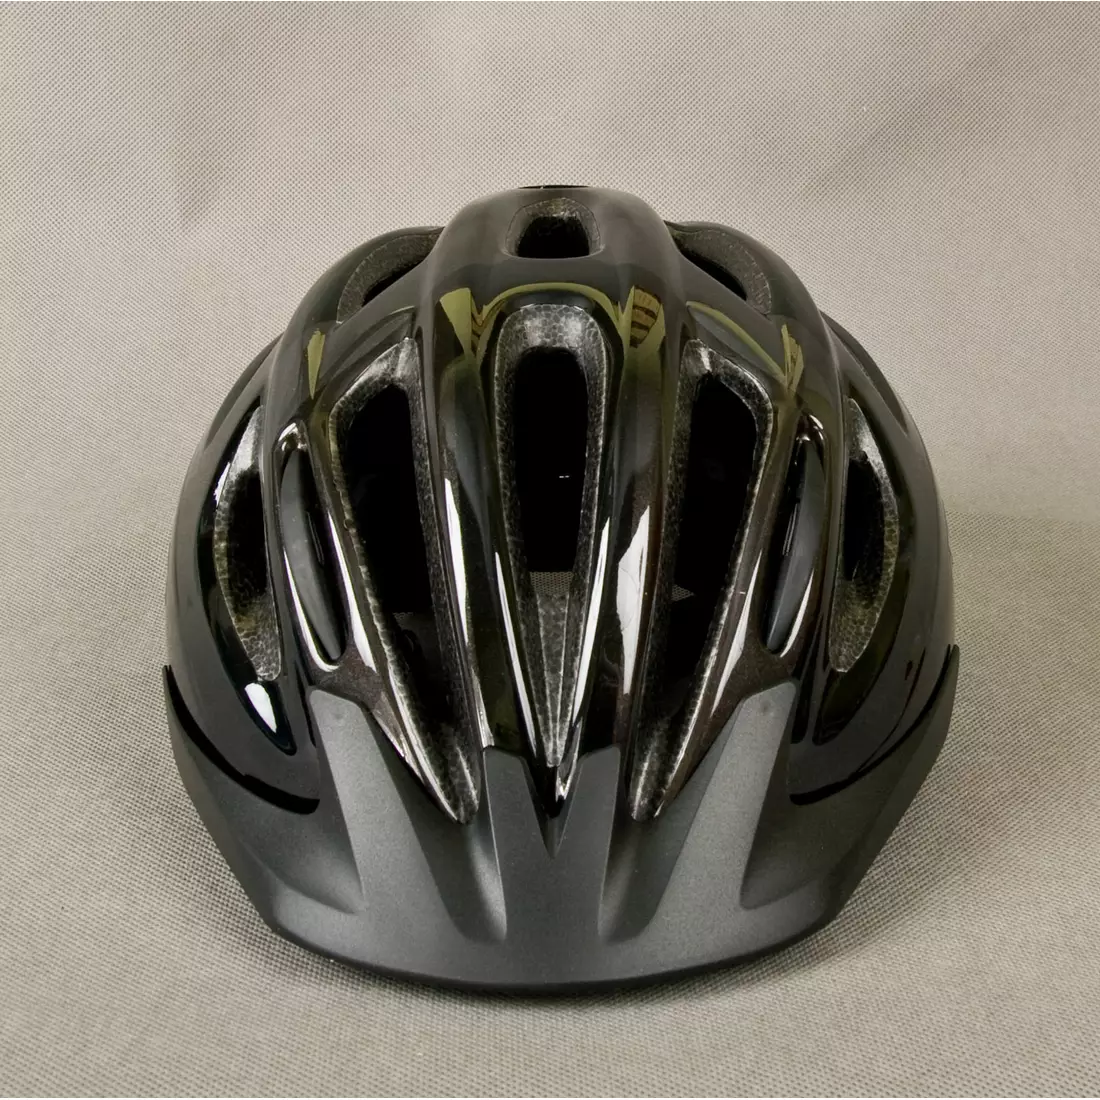 GIRO bicycle helmet SKYLINE II black